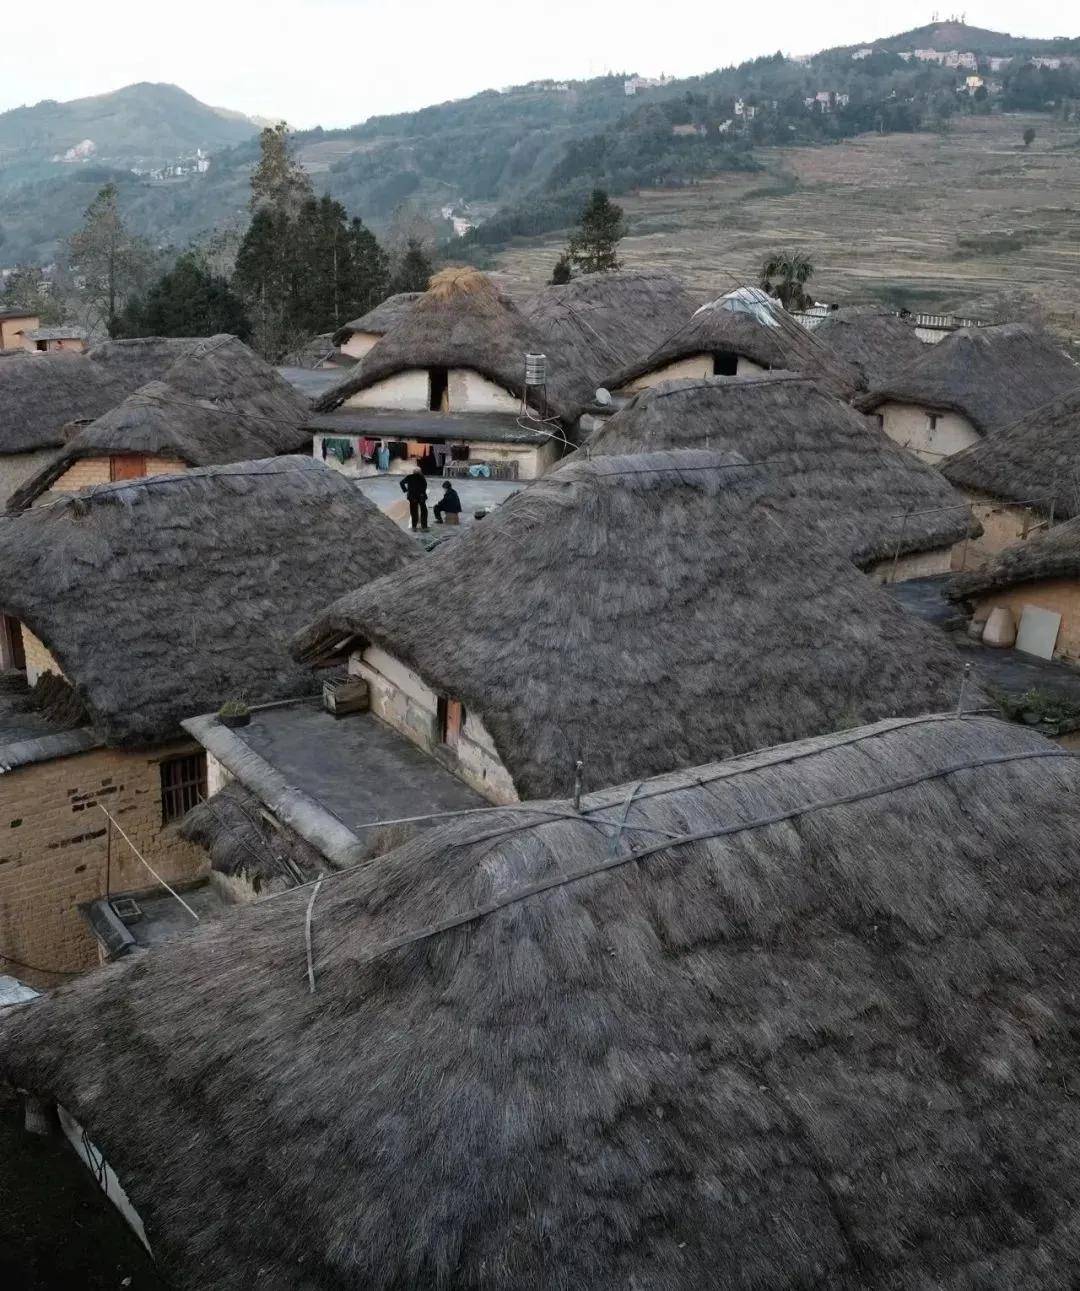 蘑菇房是元阳梯田哈尼族人民的传统住宅